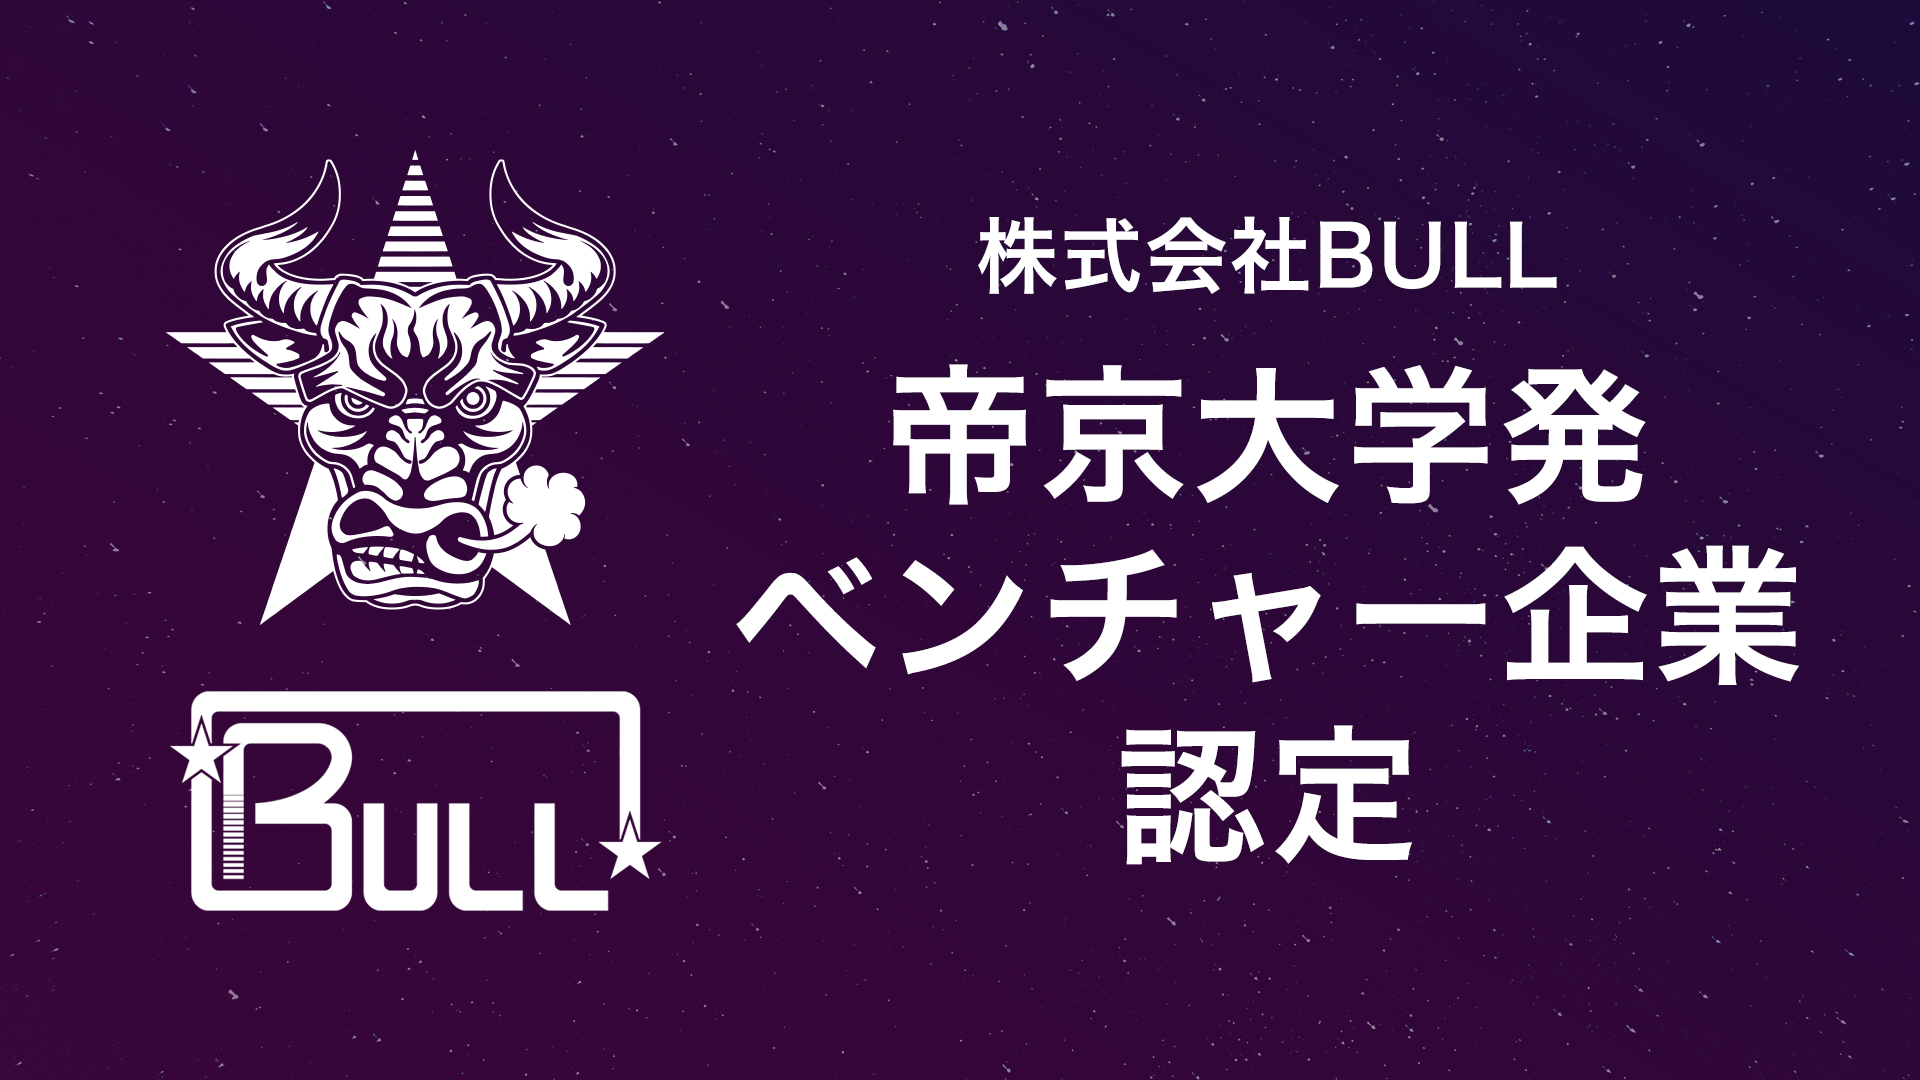 宇宙ベンチャーのBULL、初の「帝京大学発ベンチャー企業」に認定